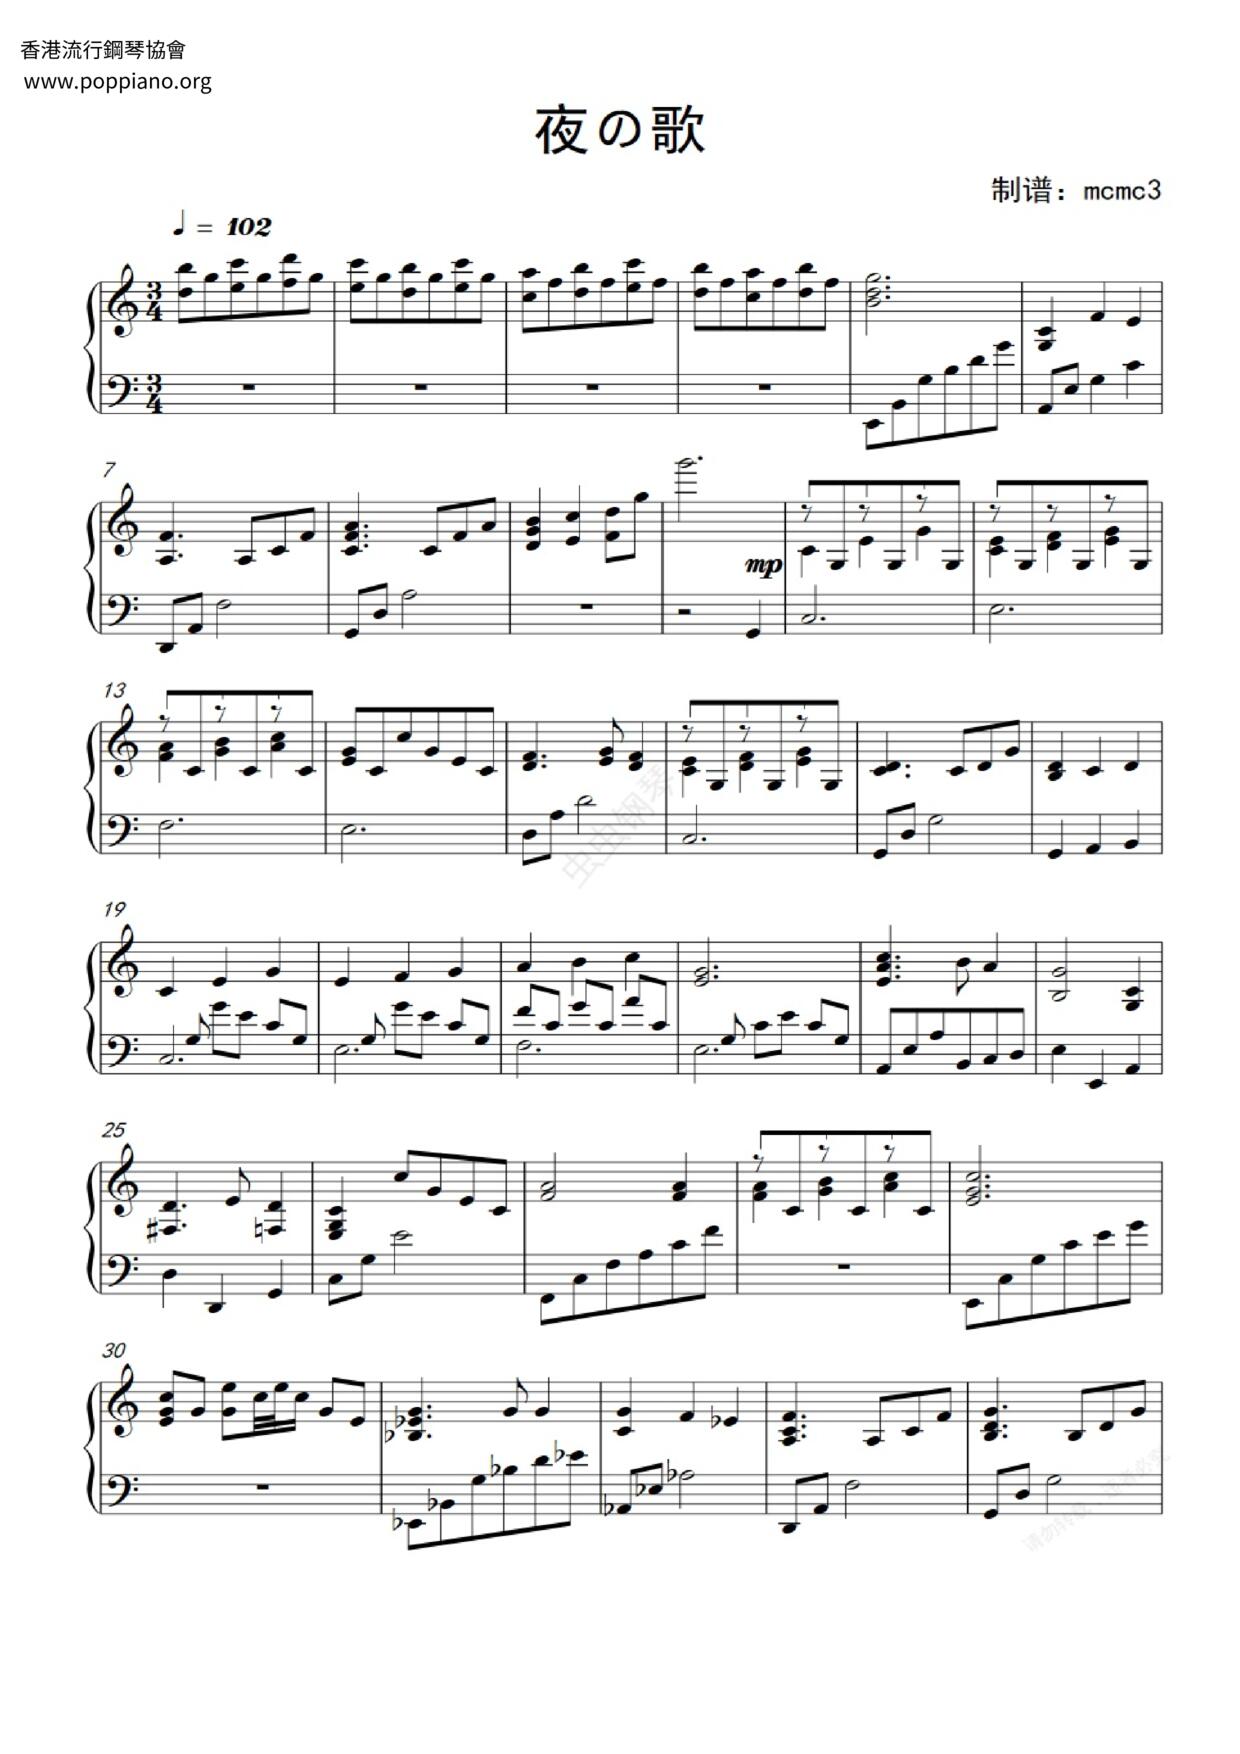 ☆大道寺知世 - 庫洛魔法使(夜之歌) ピアノ譜pdf- 香港ポップピアノ 